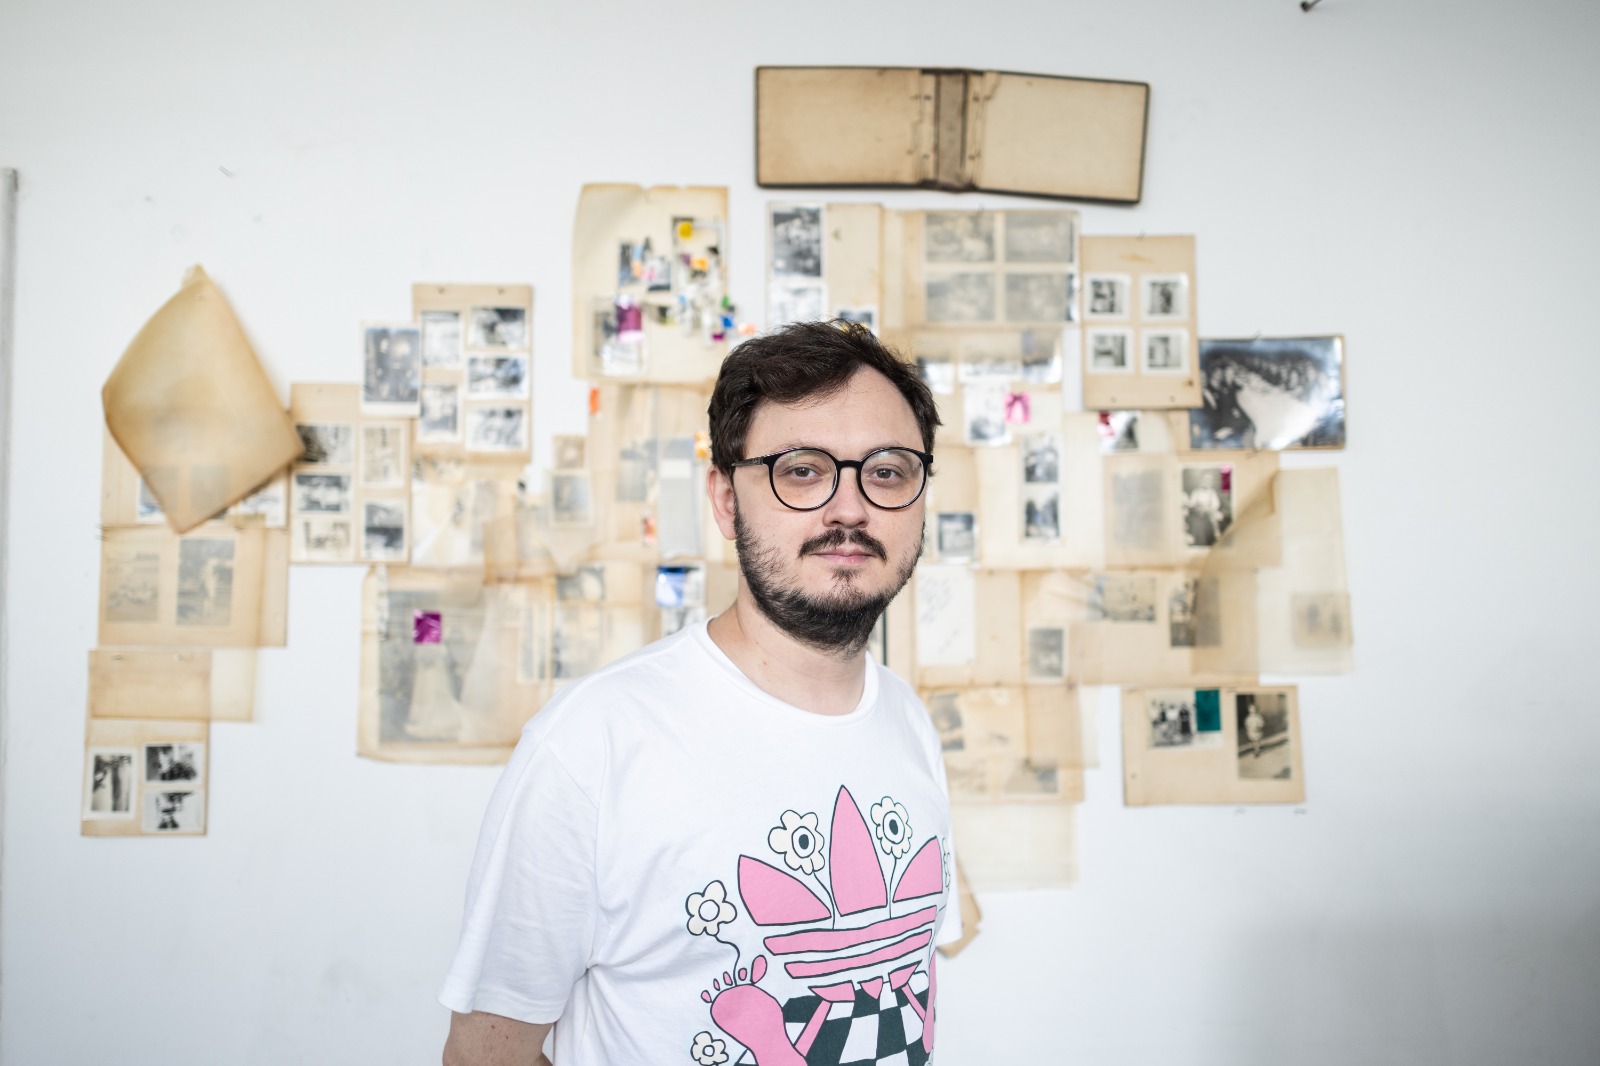 Centro Cultural Octo Marques apresenta exposição Pantera Solidão, de Benedito Ferreira